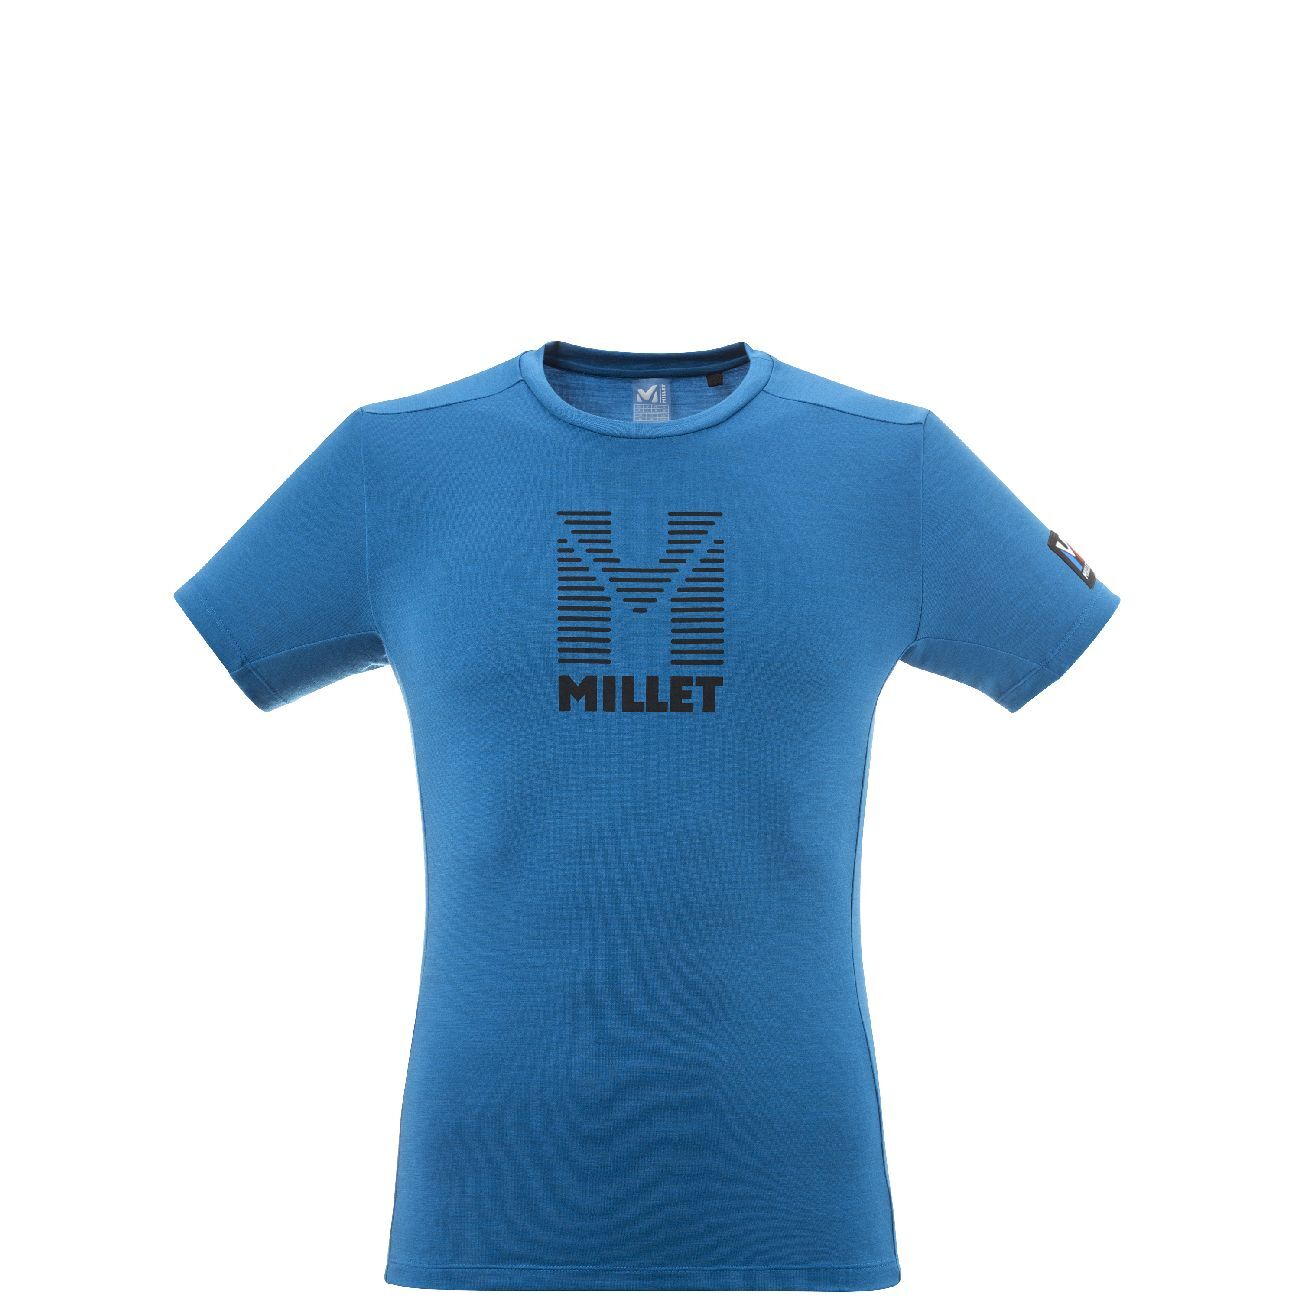 Millet Trilogy Wool Stripes - T-shirt - Uomo